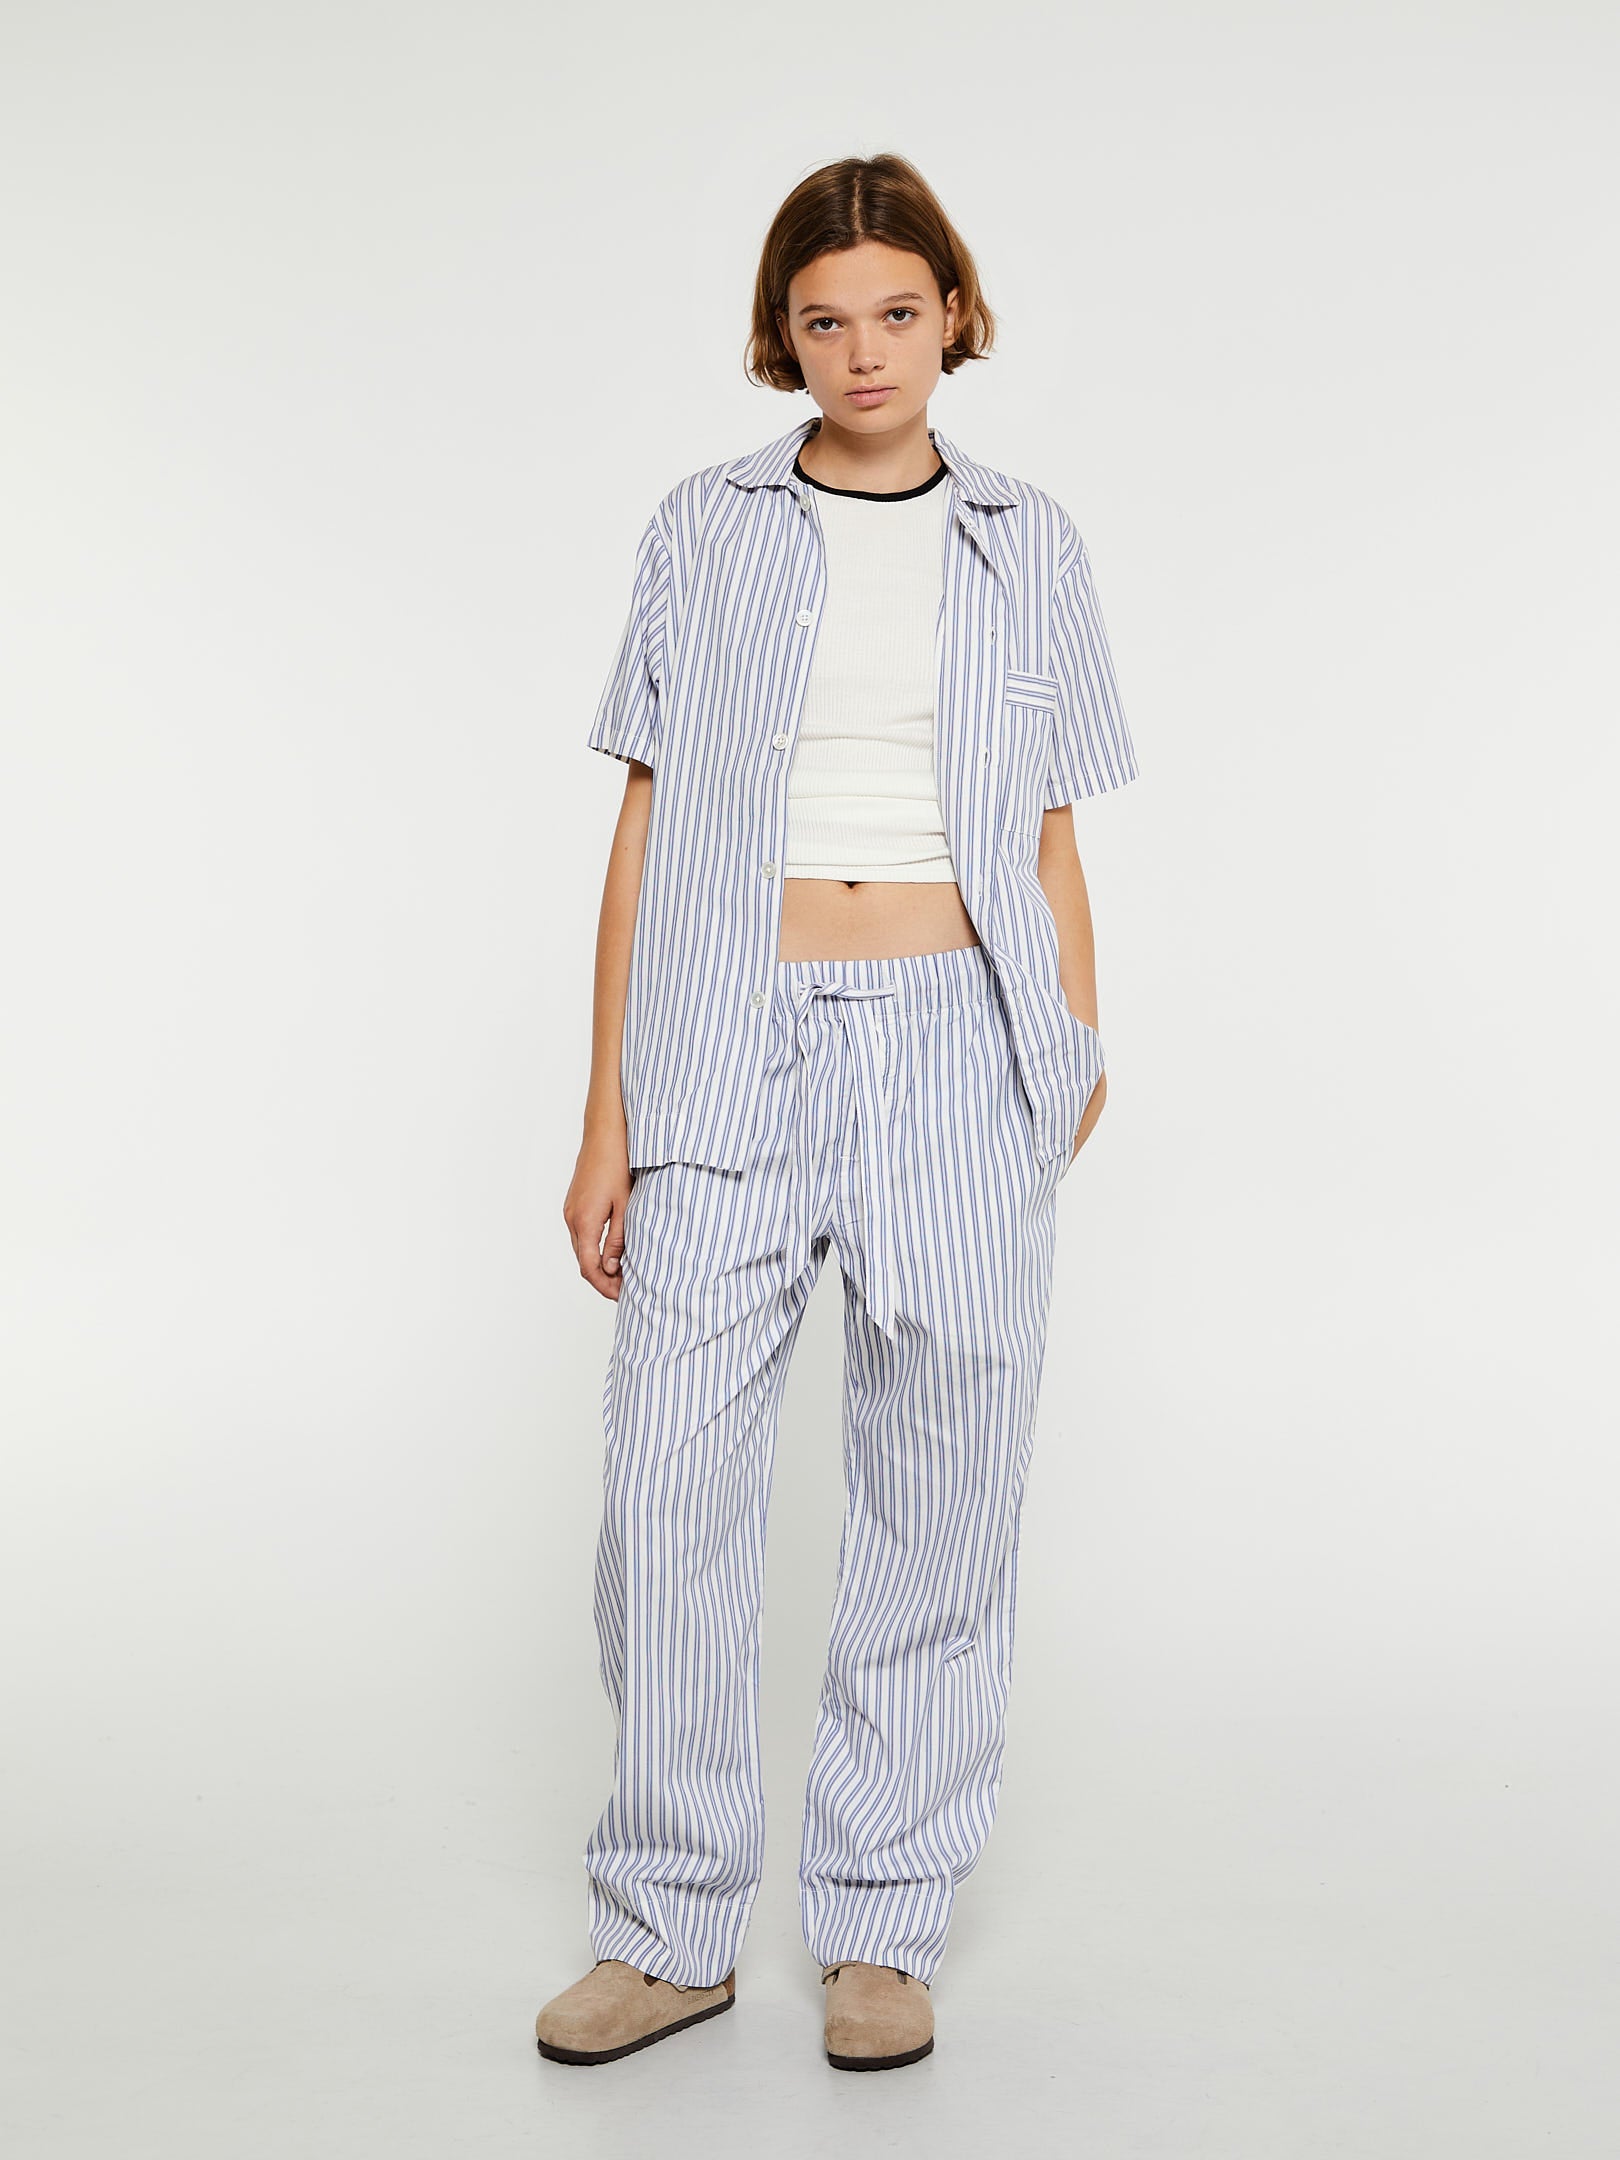 Poplin Pyjamas Short Sleeve Shirt in Skagen Stripes